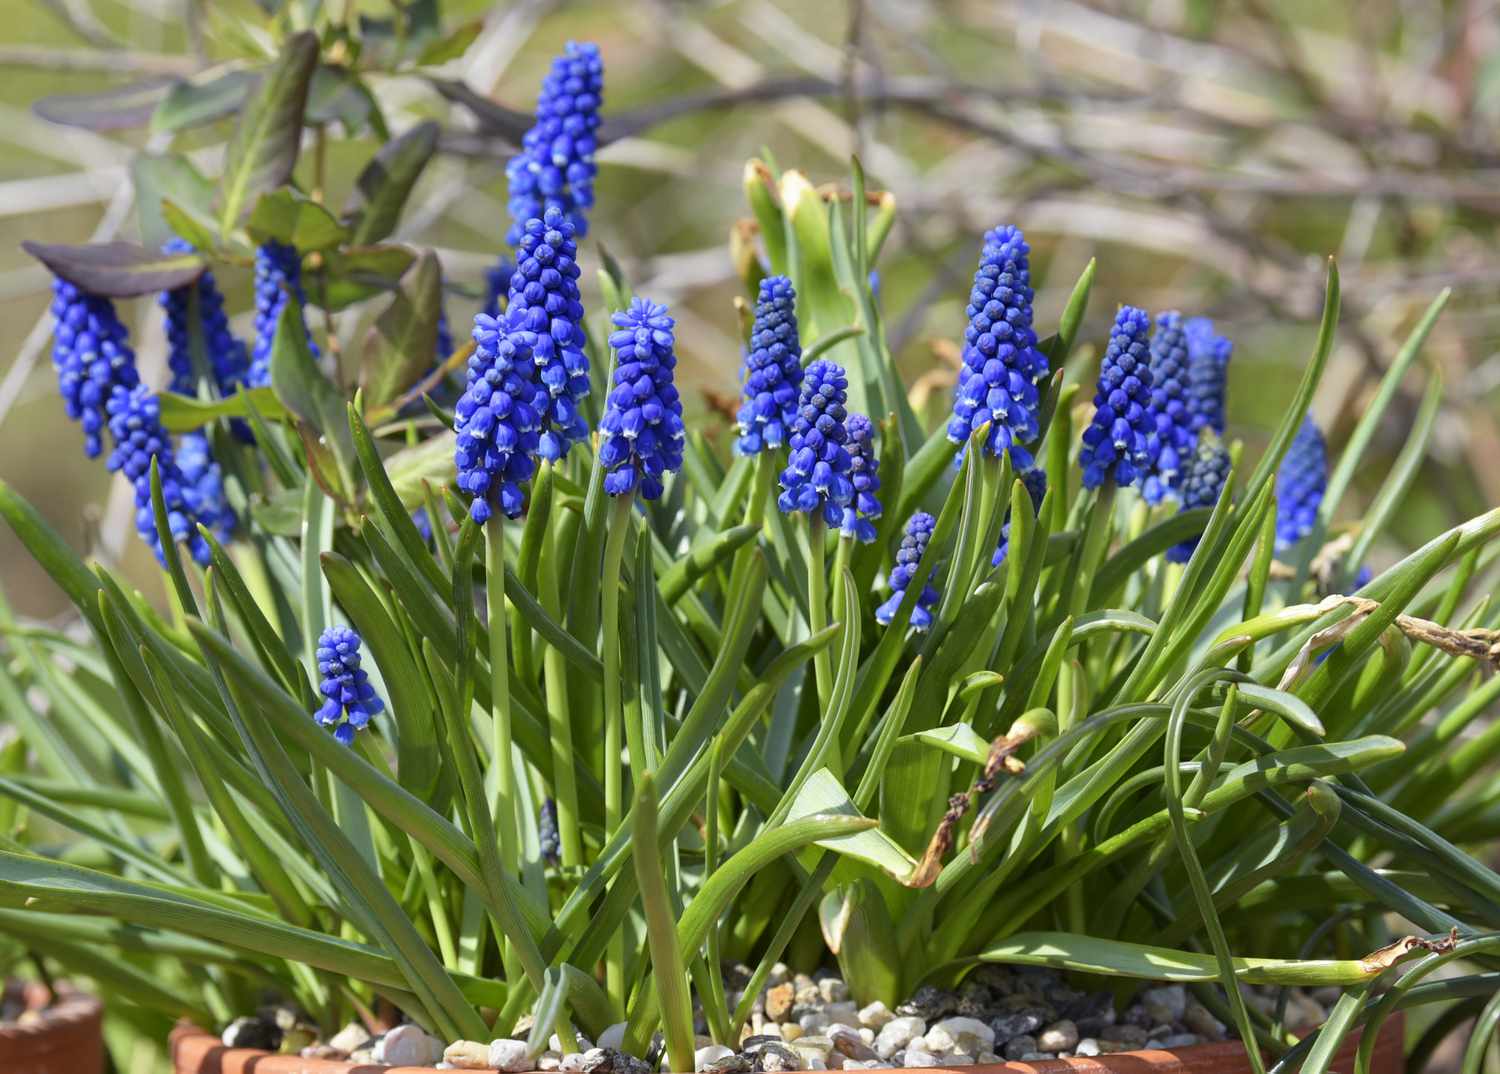 Traubenhyazinthenpflanze mit blauen glockenförmigen Blütenbüscheln, die von langen Blättern umgeben sind